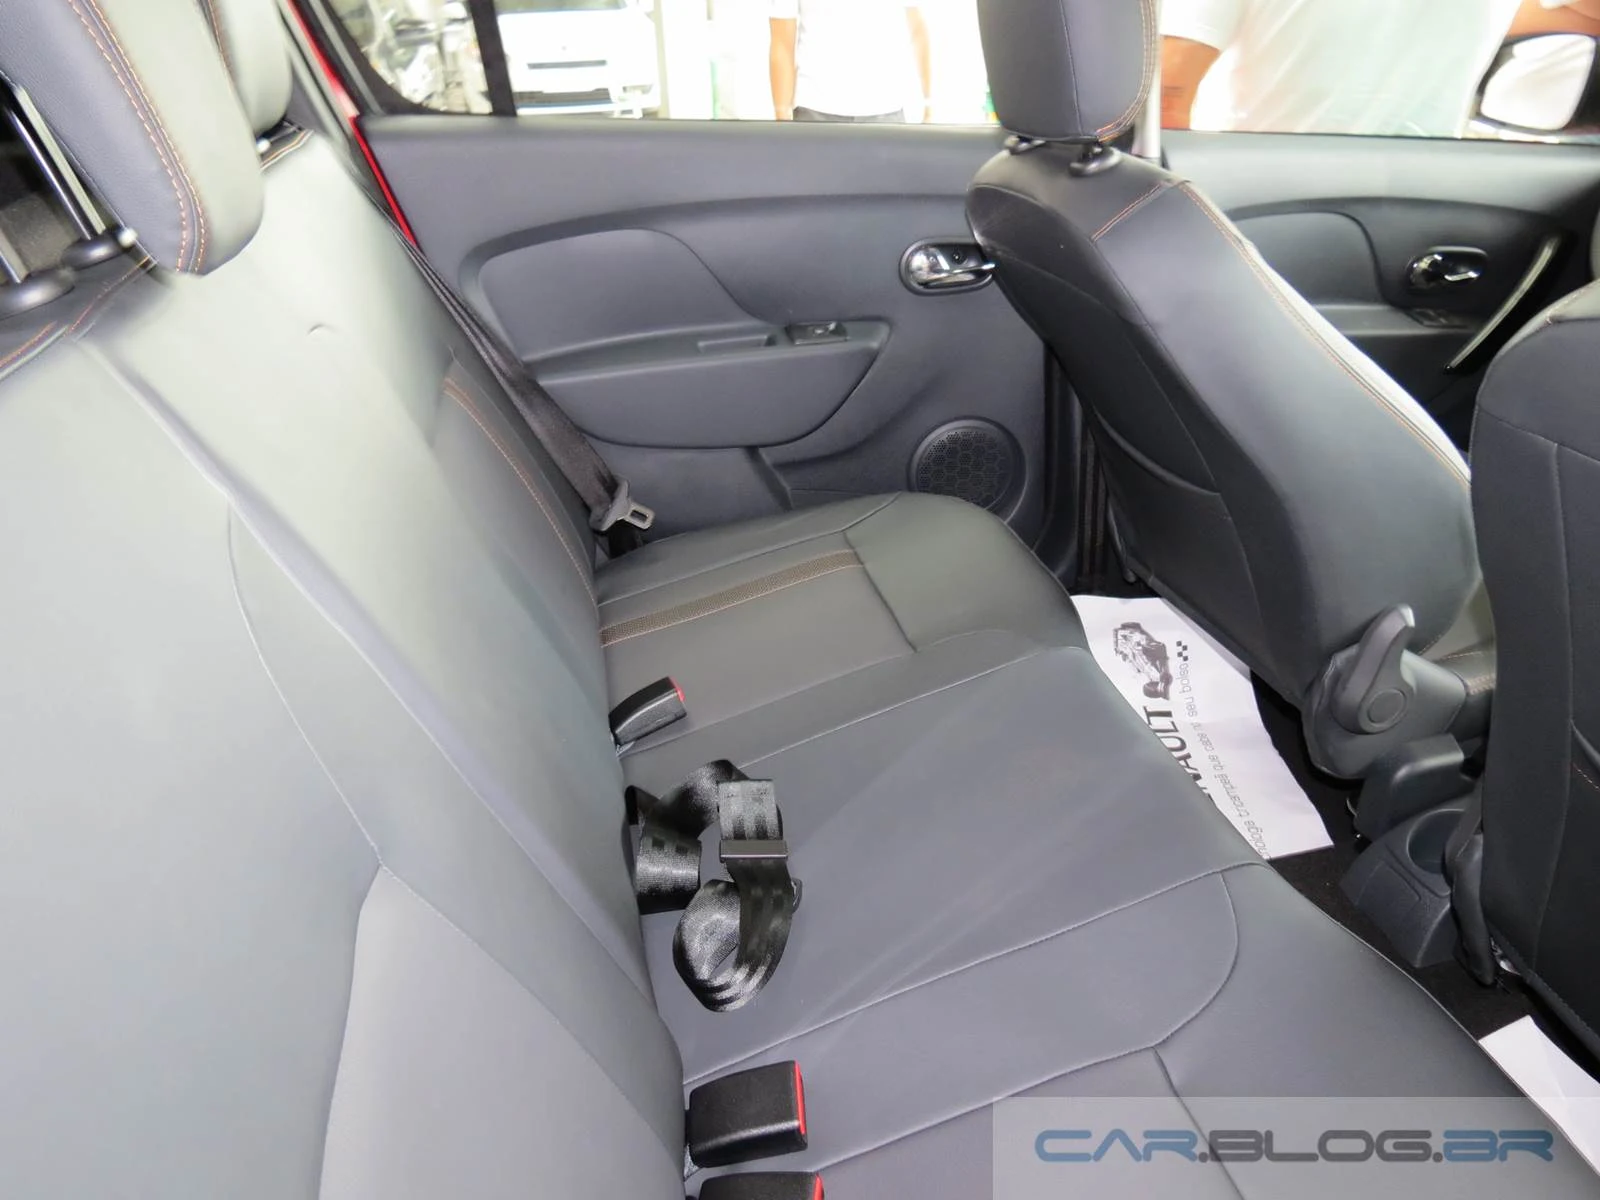 Renault Sandero Stepway 2015 - interior - espaço traseiro